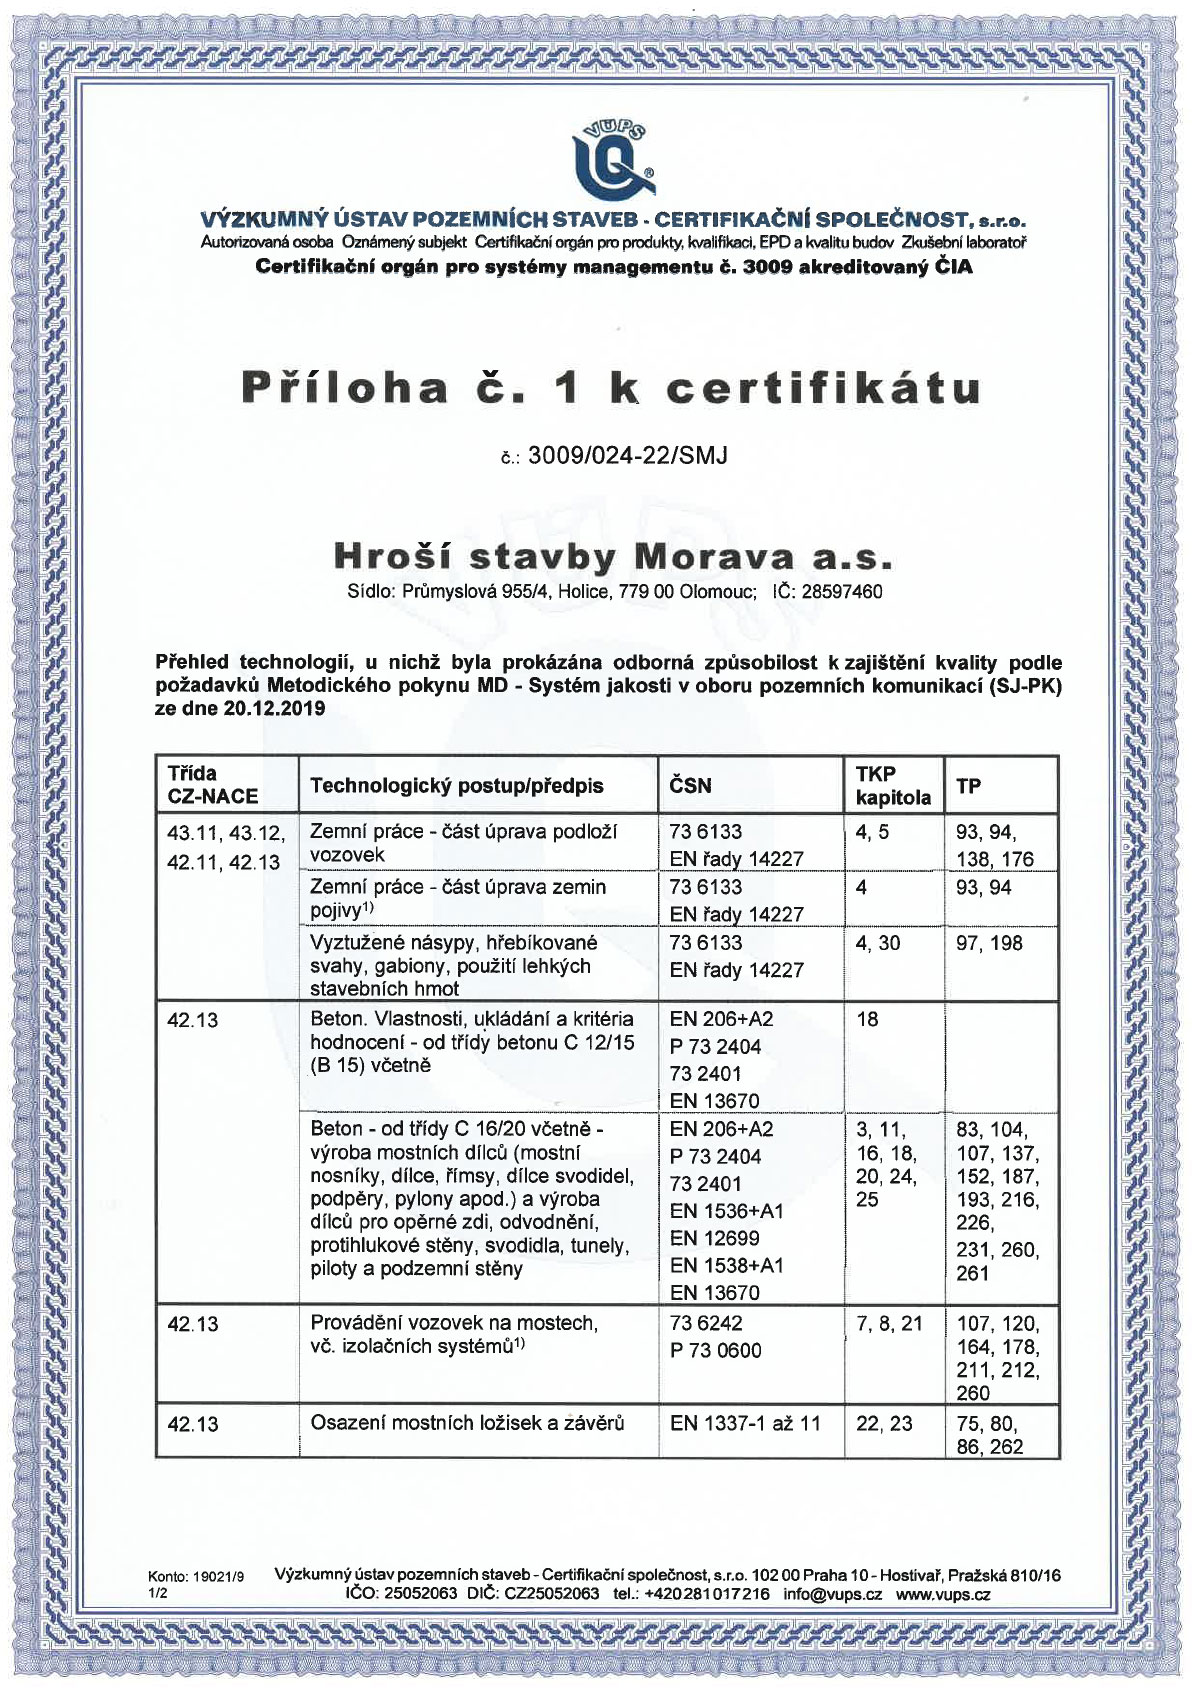 Certifikat 9001 2016 Priloha C1